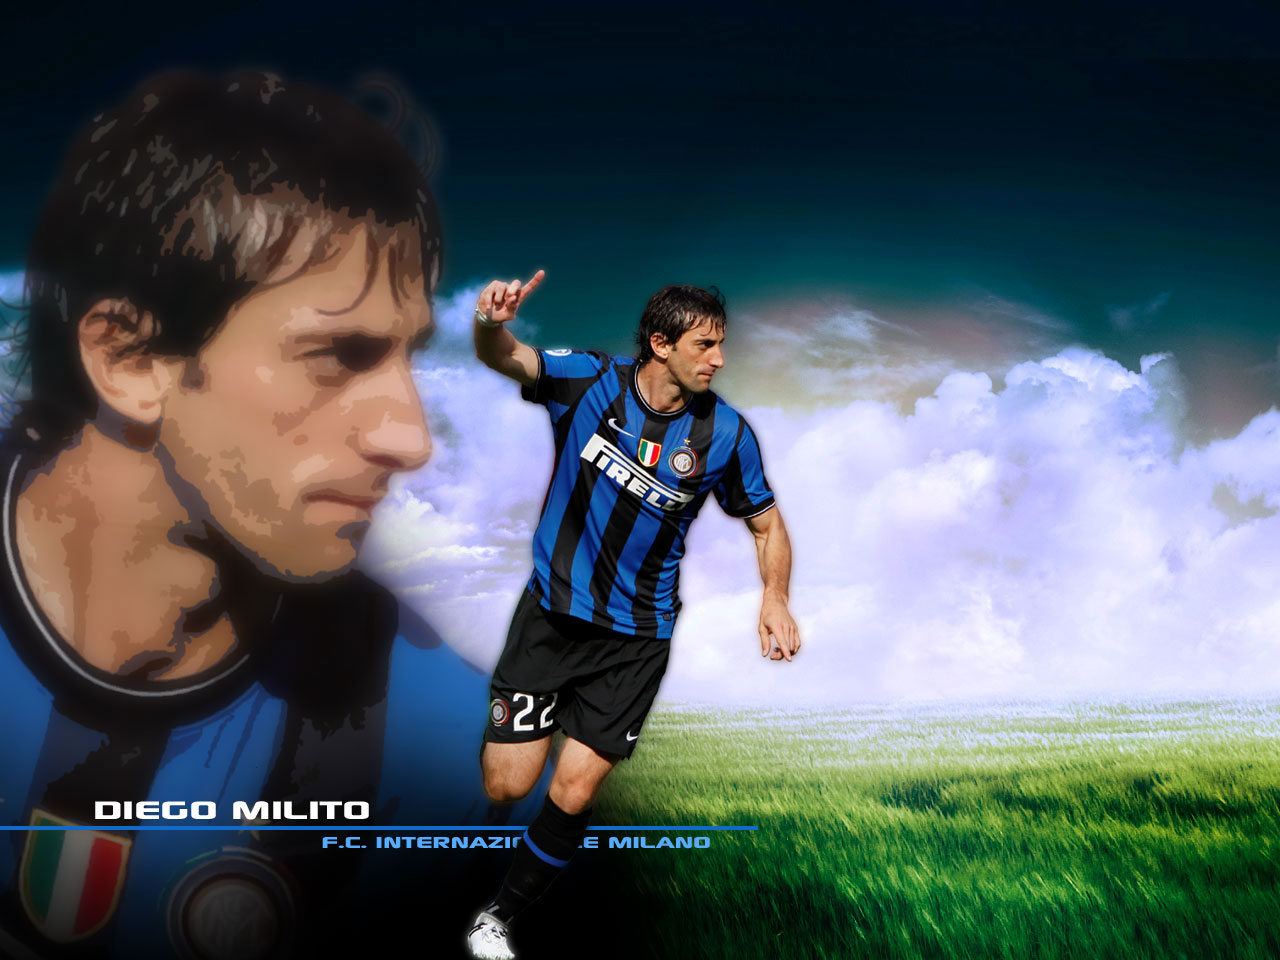 Diego Milito e tutta l’Inter mi hanno regalato una gioia vera